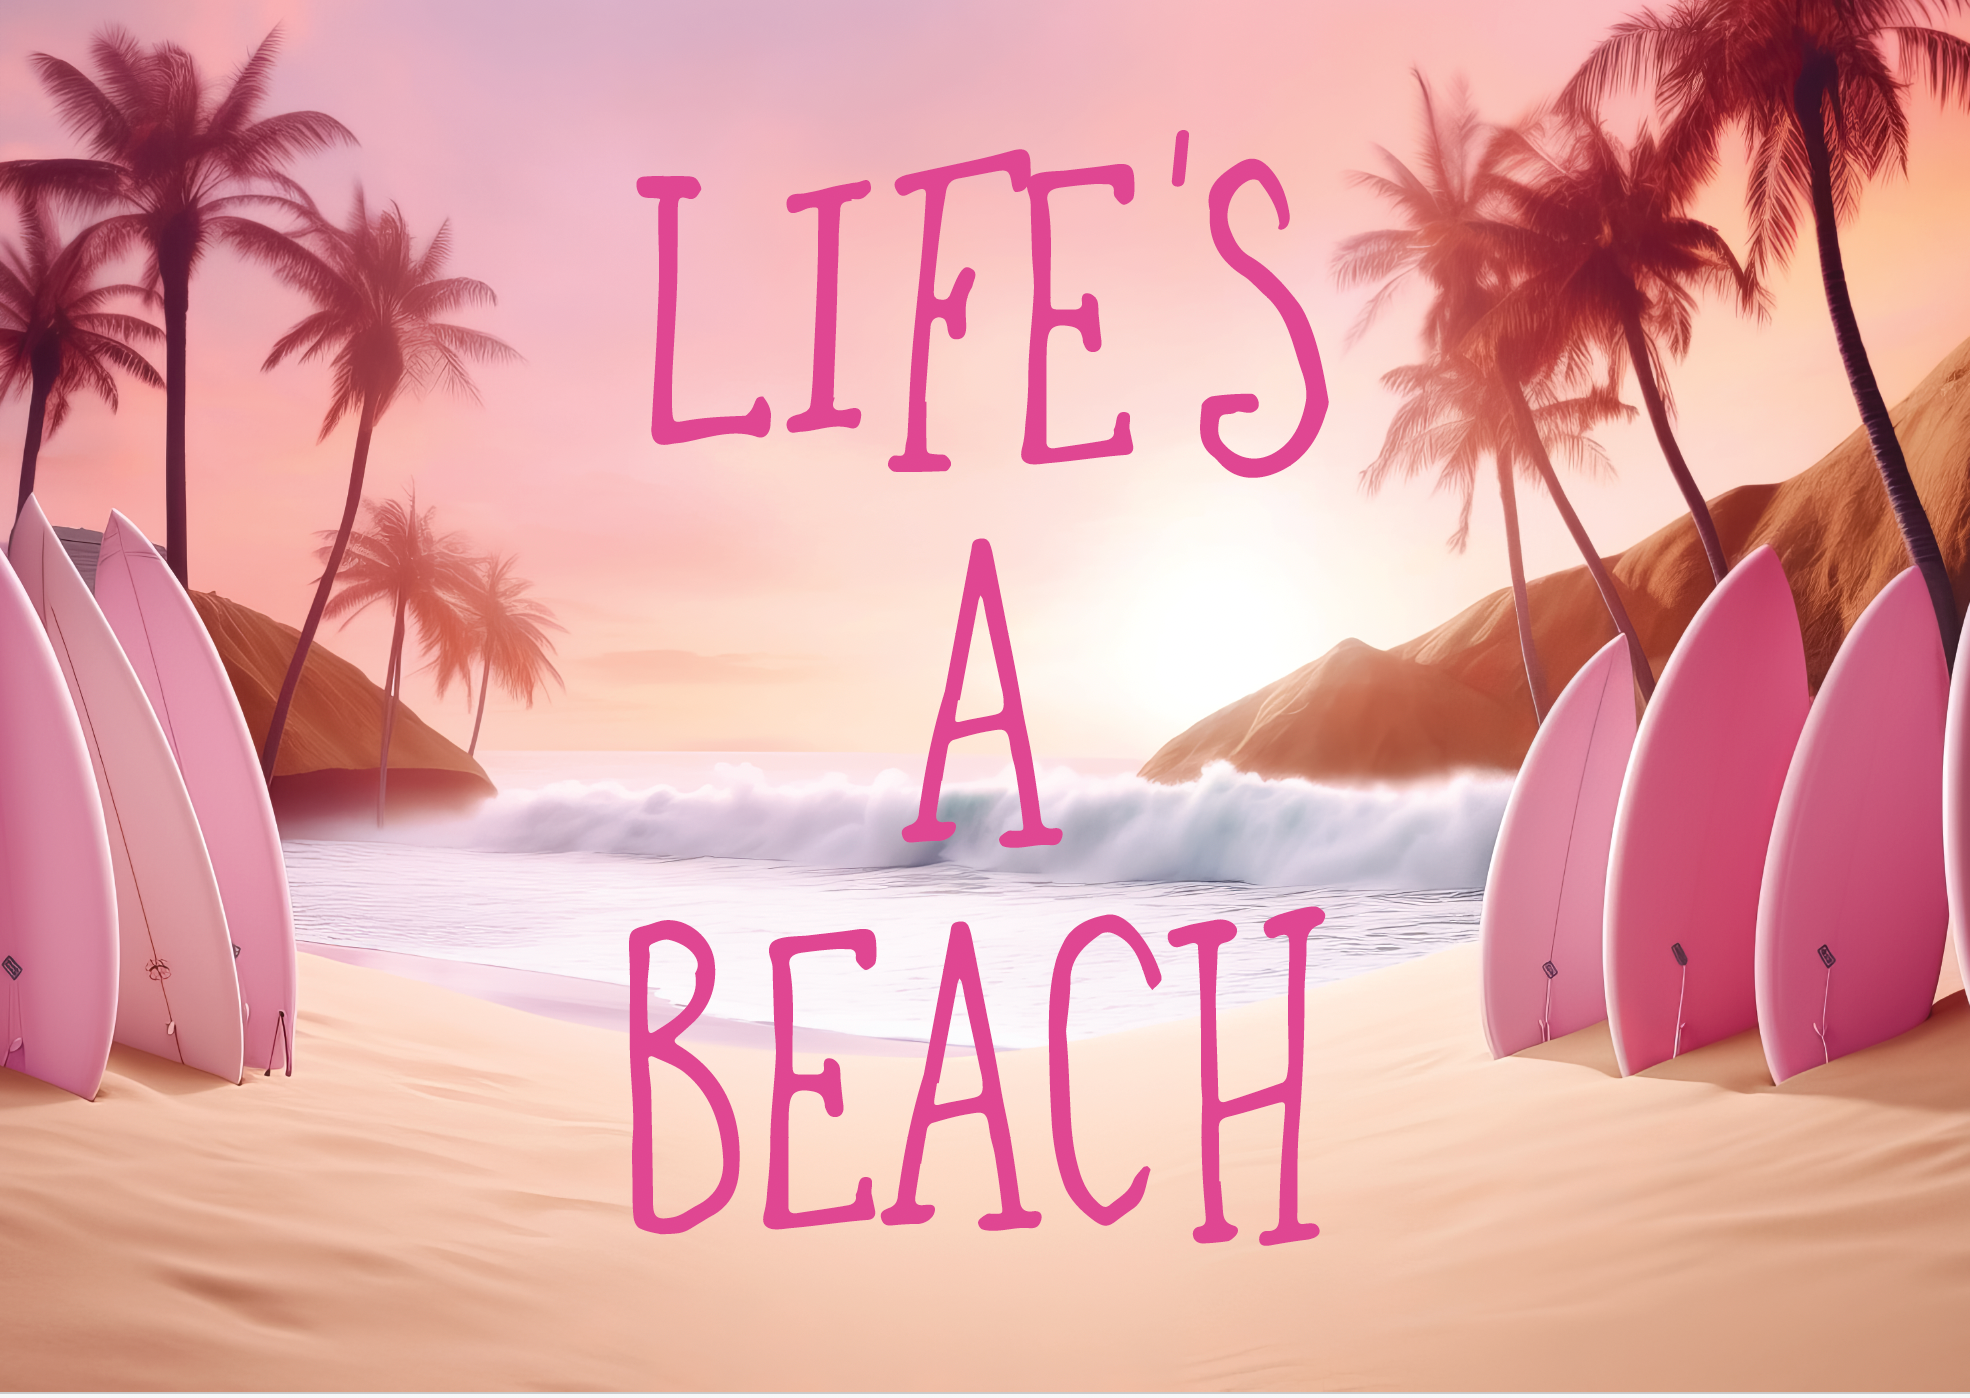 Lifes a beach poster nz